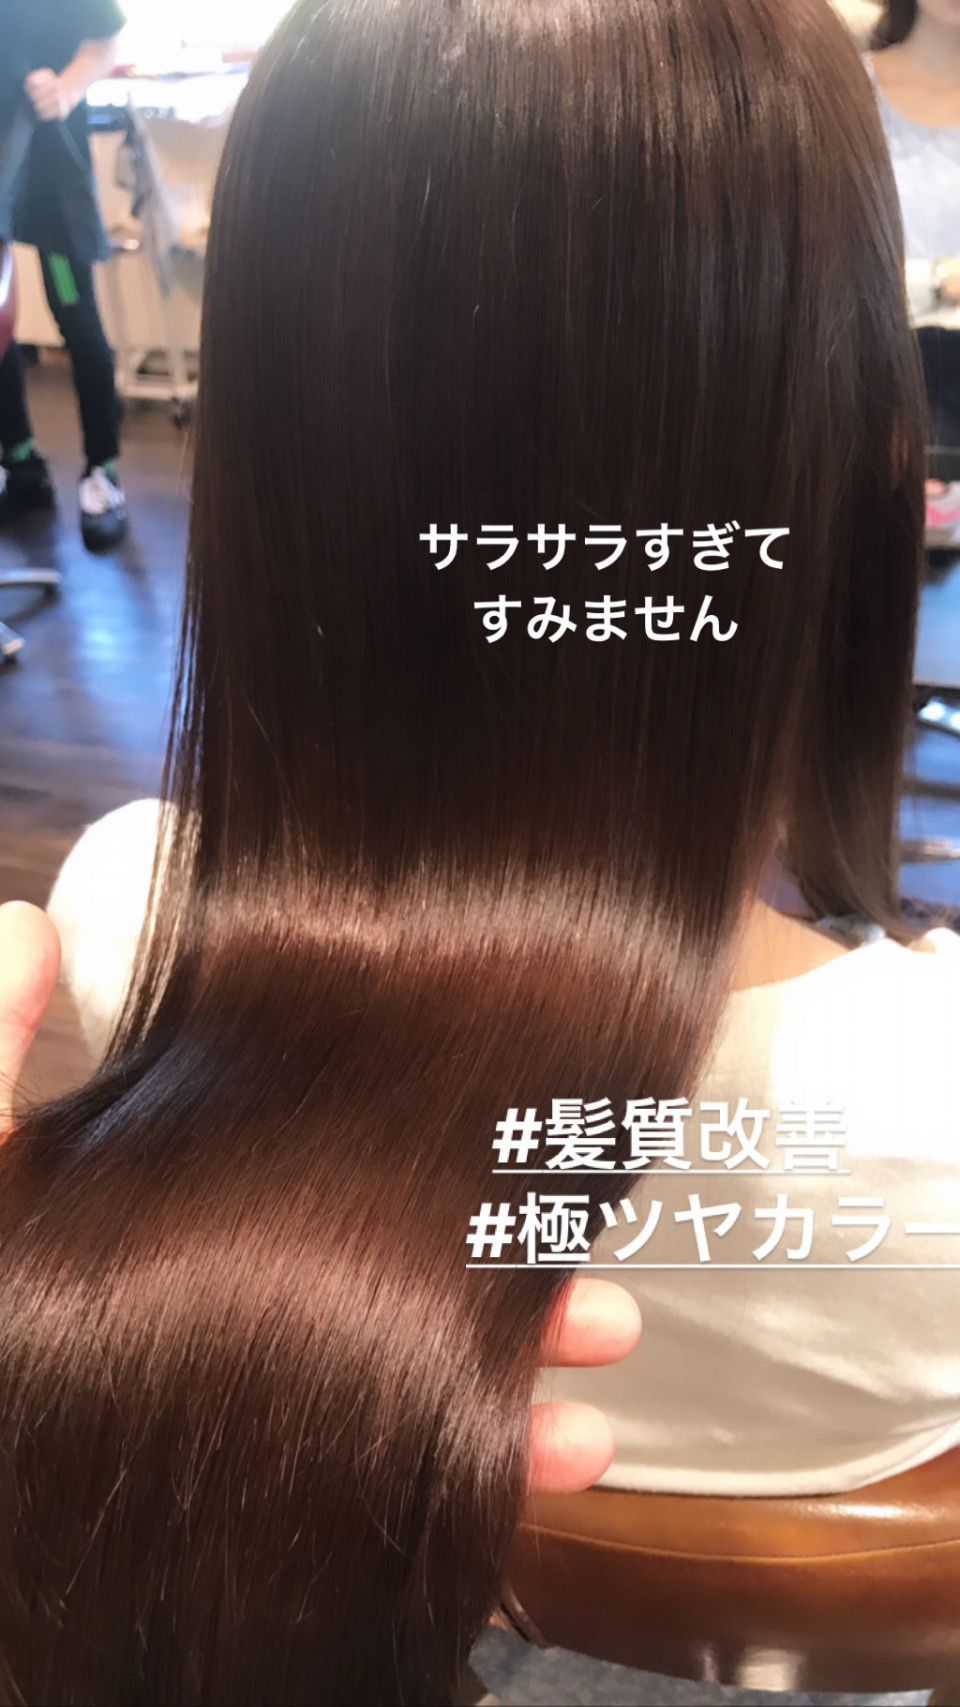 京都髪質改善 縮毛矯正 サラサラすぎてすみません 京都の美容院 Nyny 河原町三条店 ブログ